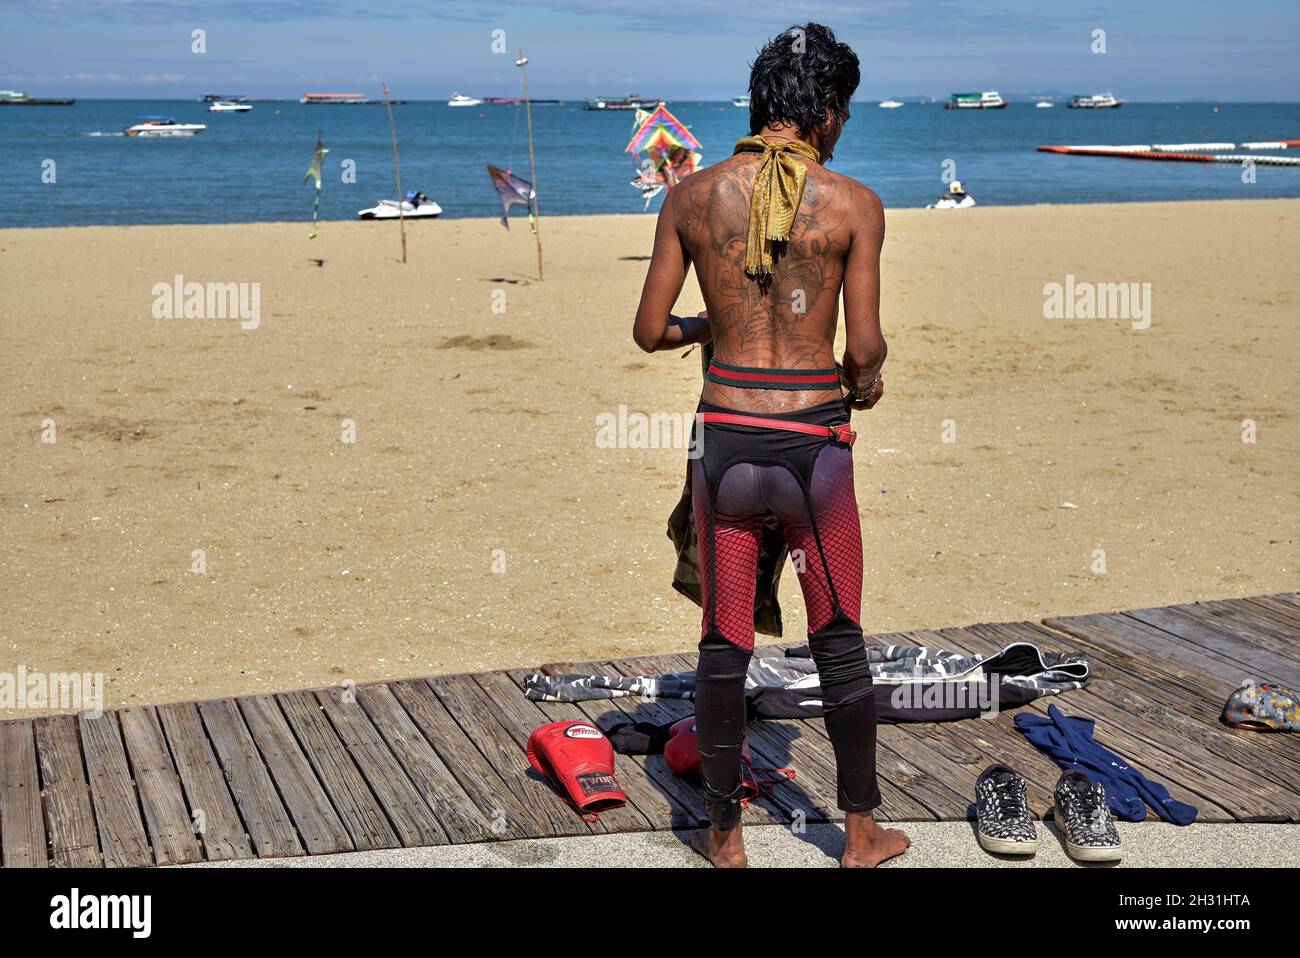 Style de robe inhabituel, y compris la ceinture de suspension femelle portée par un homme efféminé à Pattaya Beach Thaïlande Asie du Sud-est Banque D'Images